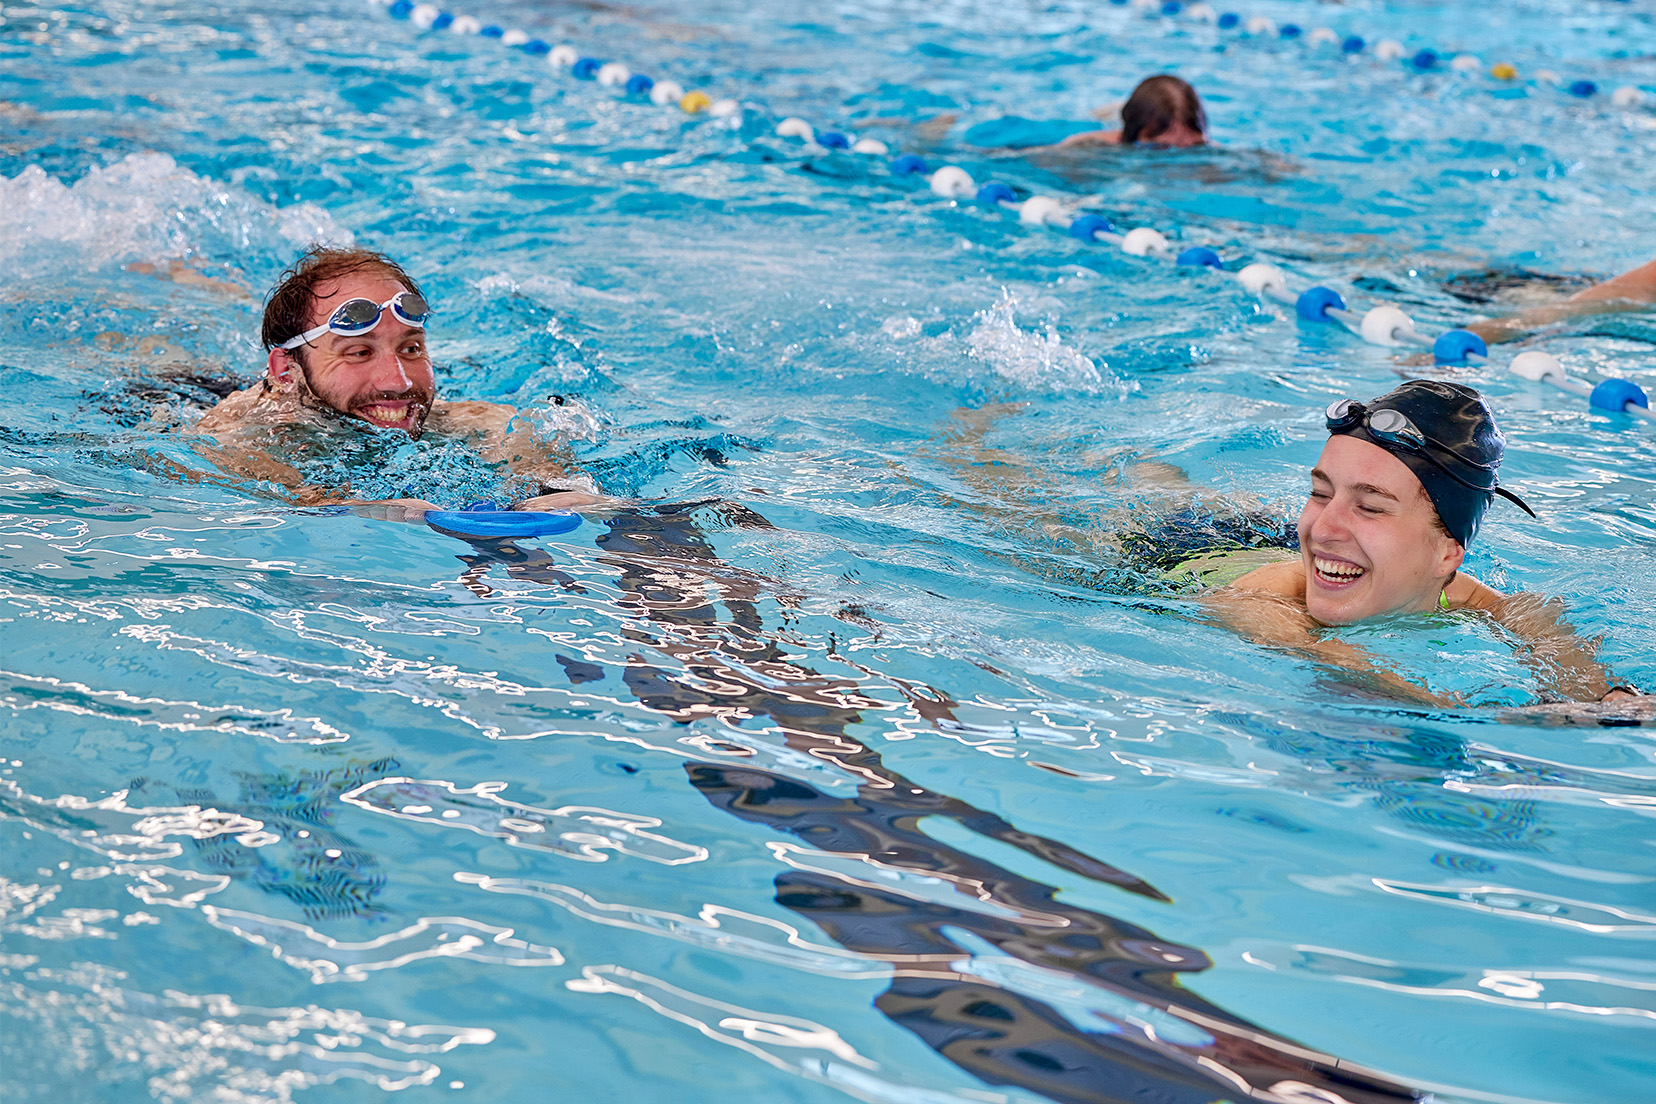 Twee ervaren zwemmers trainen gezamenlijk tijdens de les sportief banenzwemmen. Beide zwemmen benen met een plankje en hebben veel lol samen.